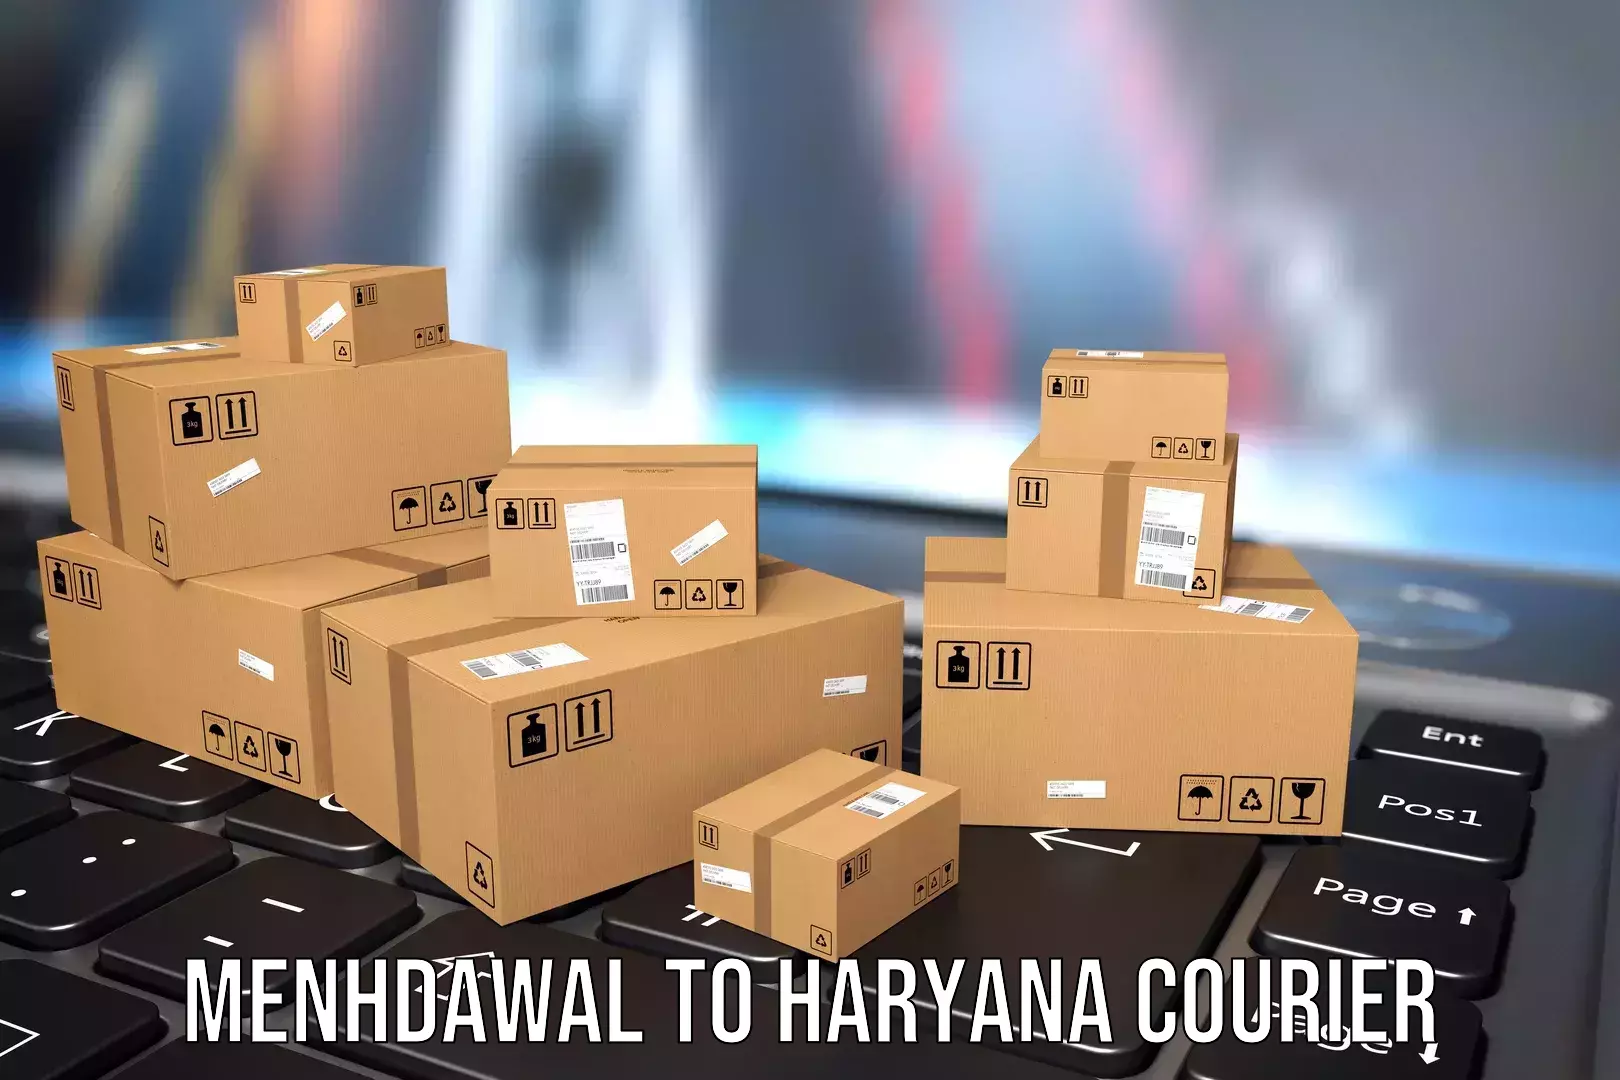 Luggage transit service Menhdawal to Haryana